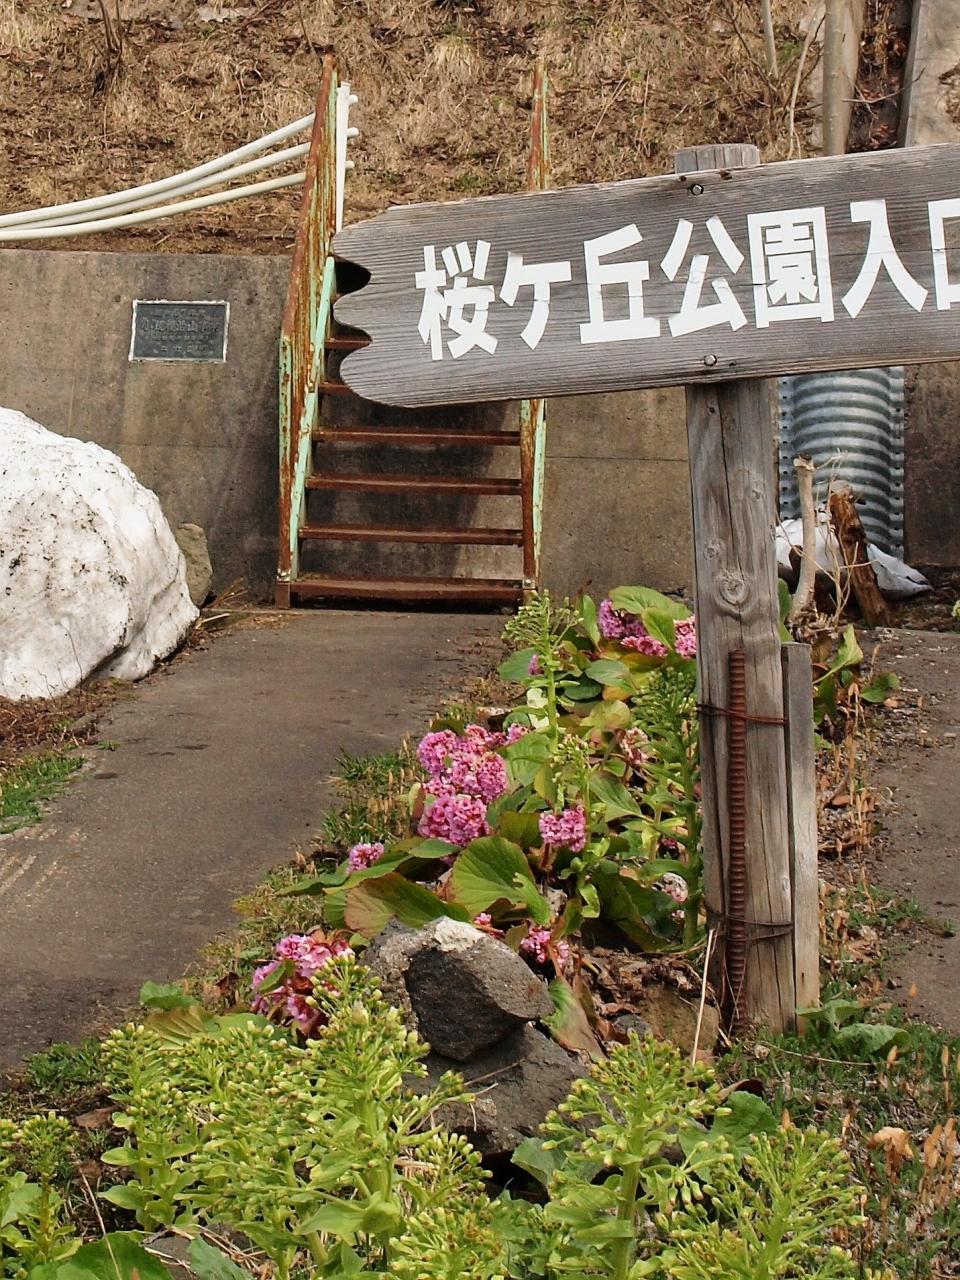 春を告げる妖精たちに出逢う喜び ニセコ 北海道 の旅行記 ブログ By 紅映さん フォートラベル